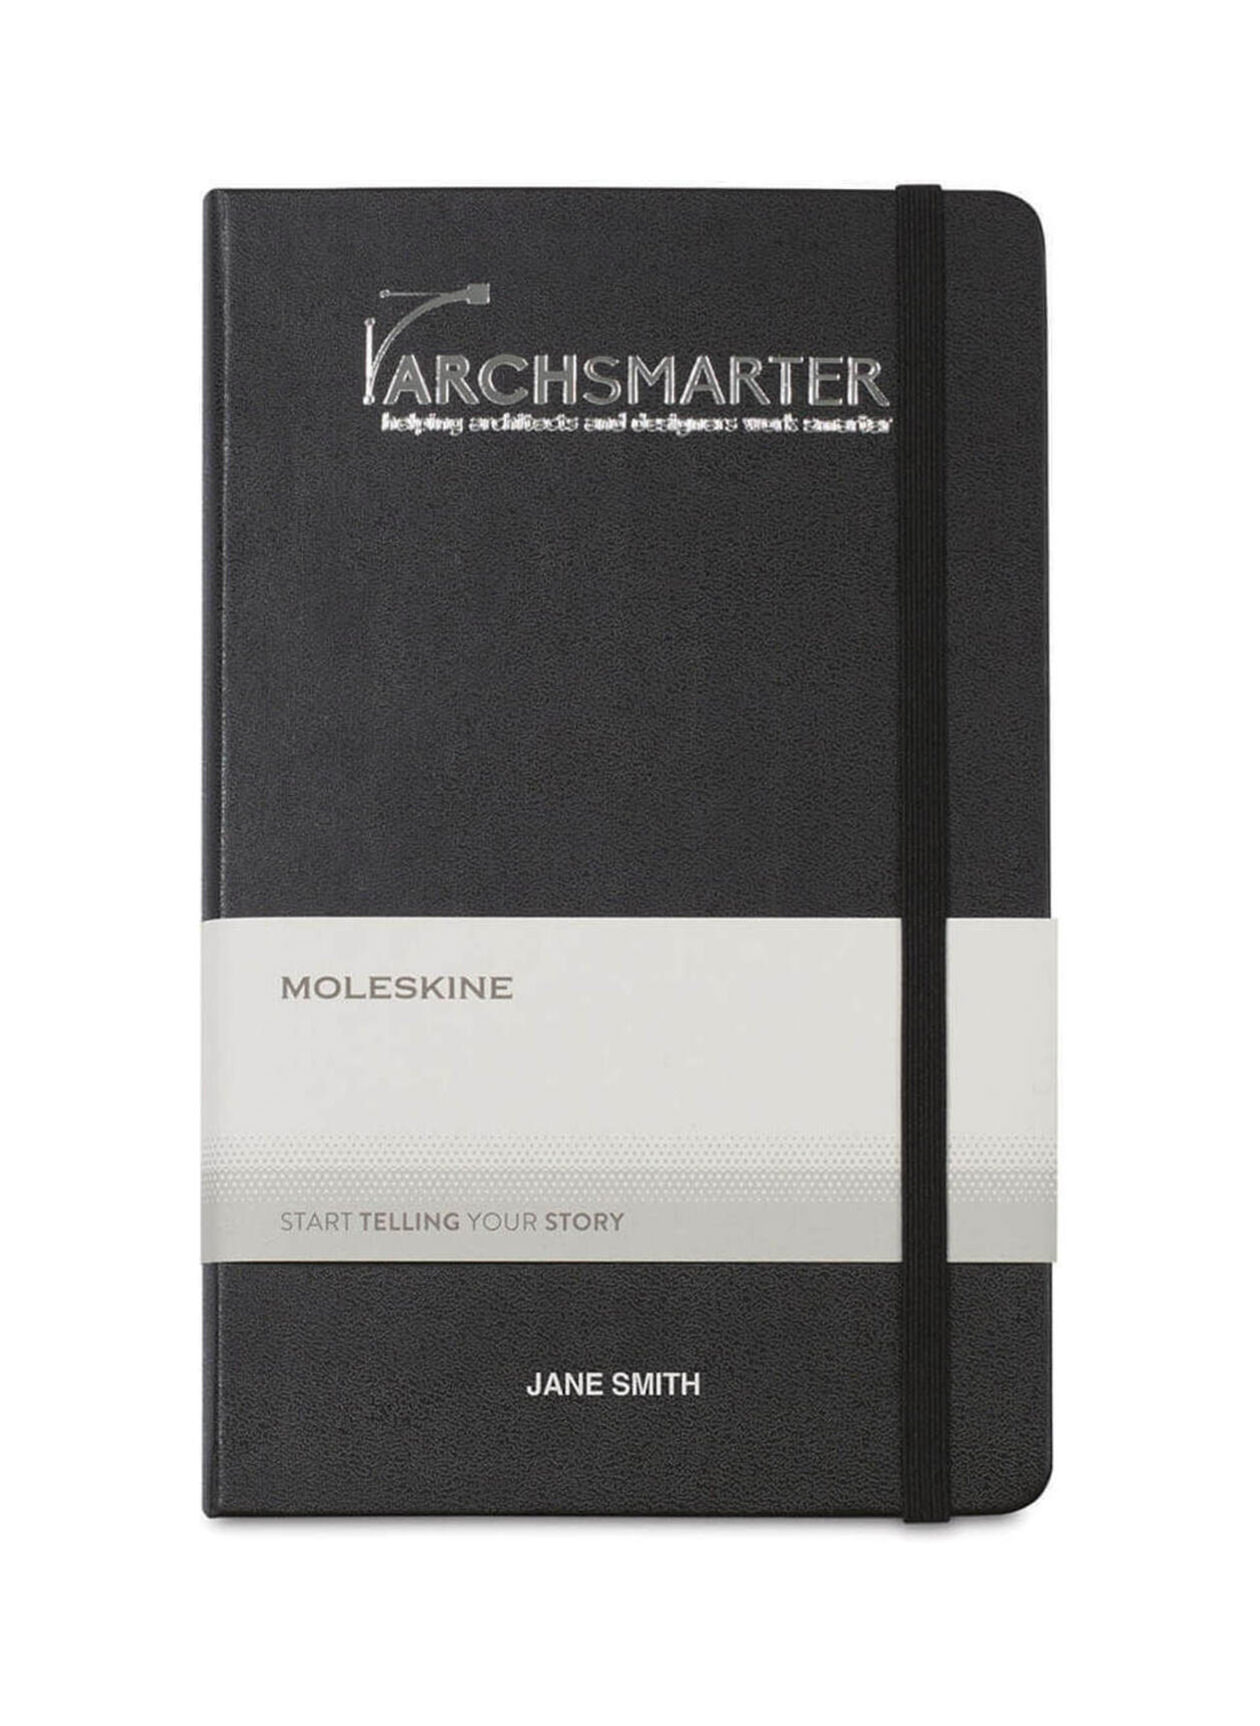 Moleskine Black Hard Cover Large Double Layout Notebook